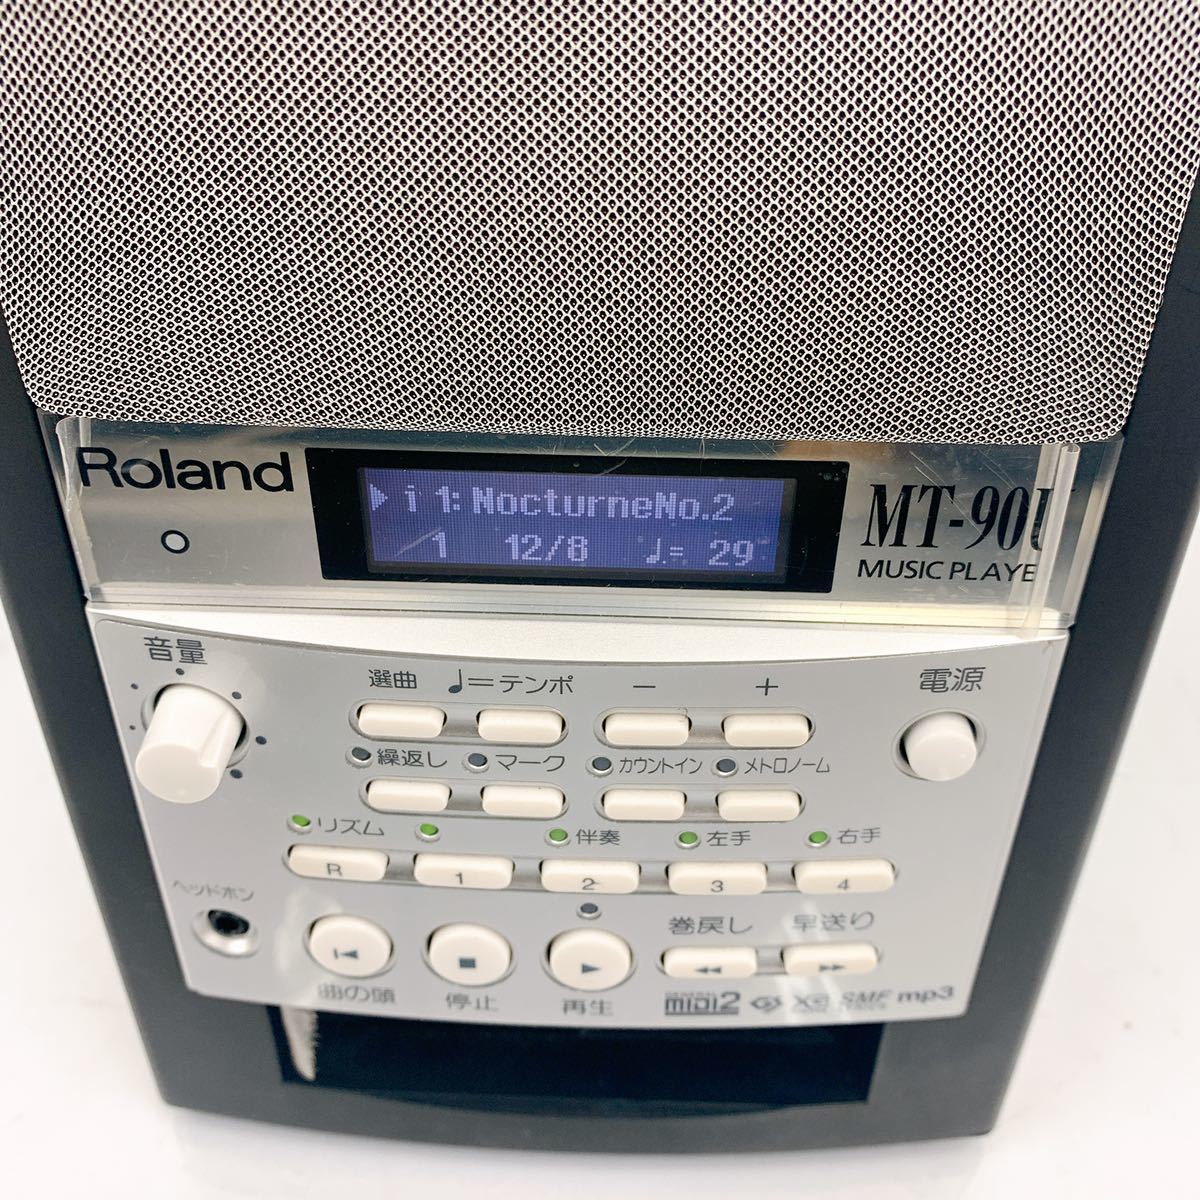 オーディオ機器 スピーカー EN39 Roland ローランド Music Player MT-90U マルチ フォーマット ミュージック プレーヤー WAV MP3 通電OK  中古 現状品 動作未確認